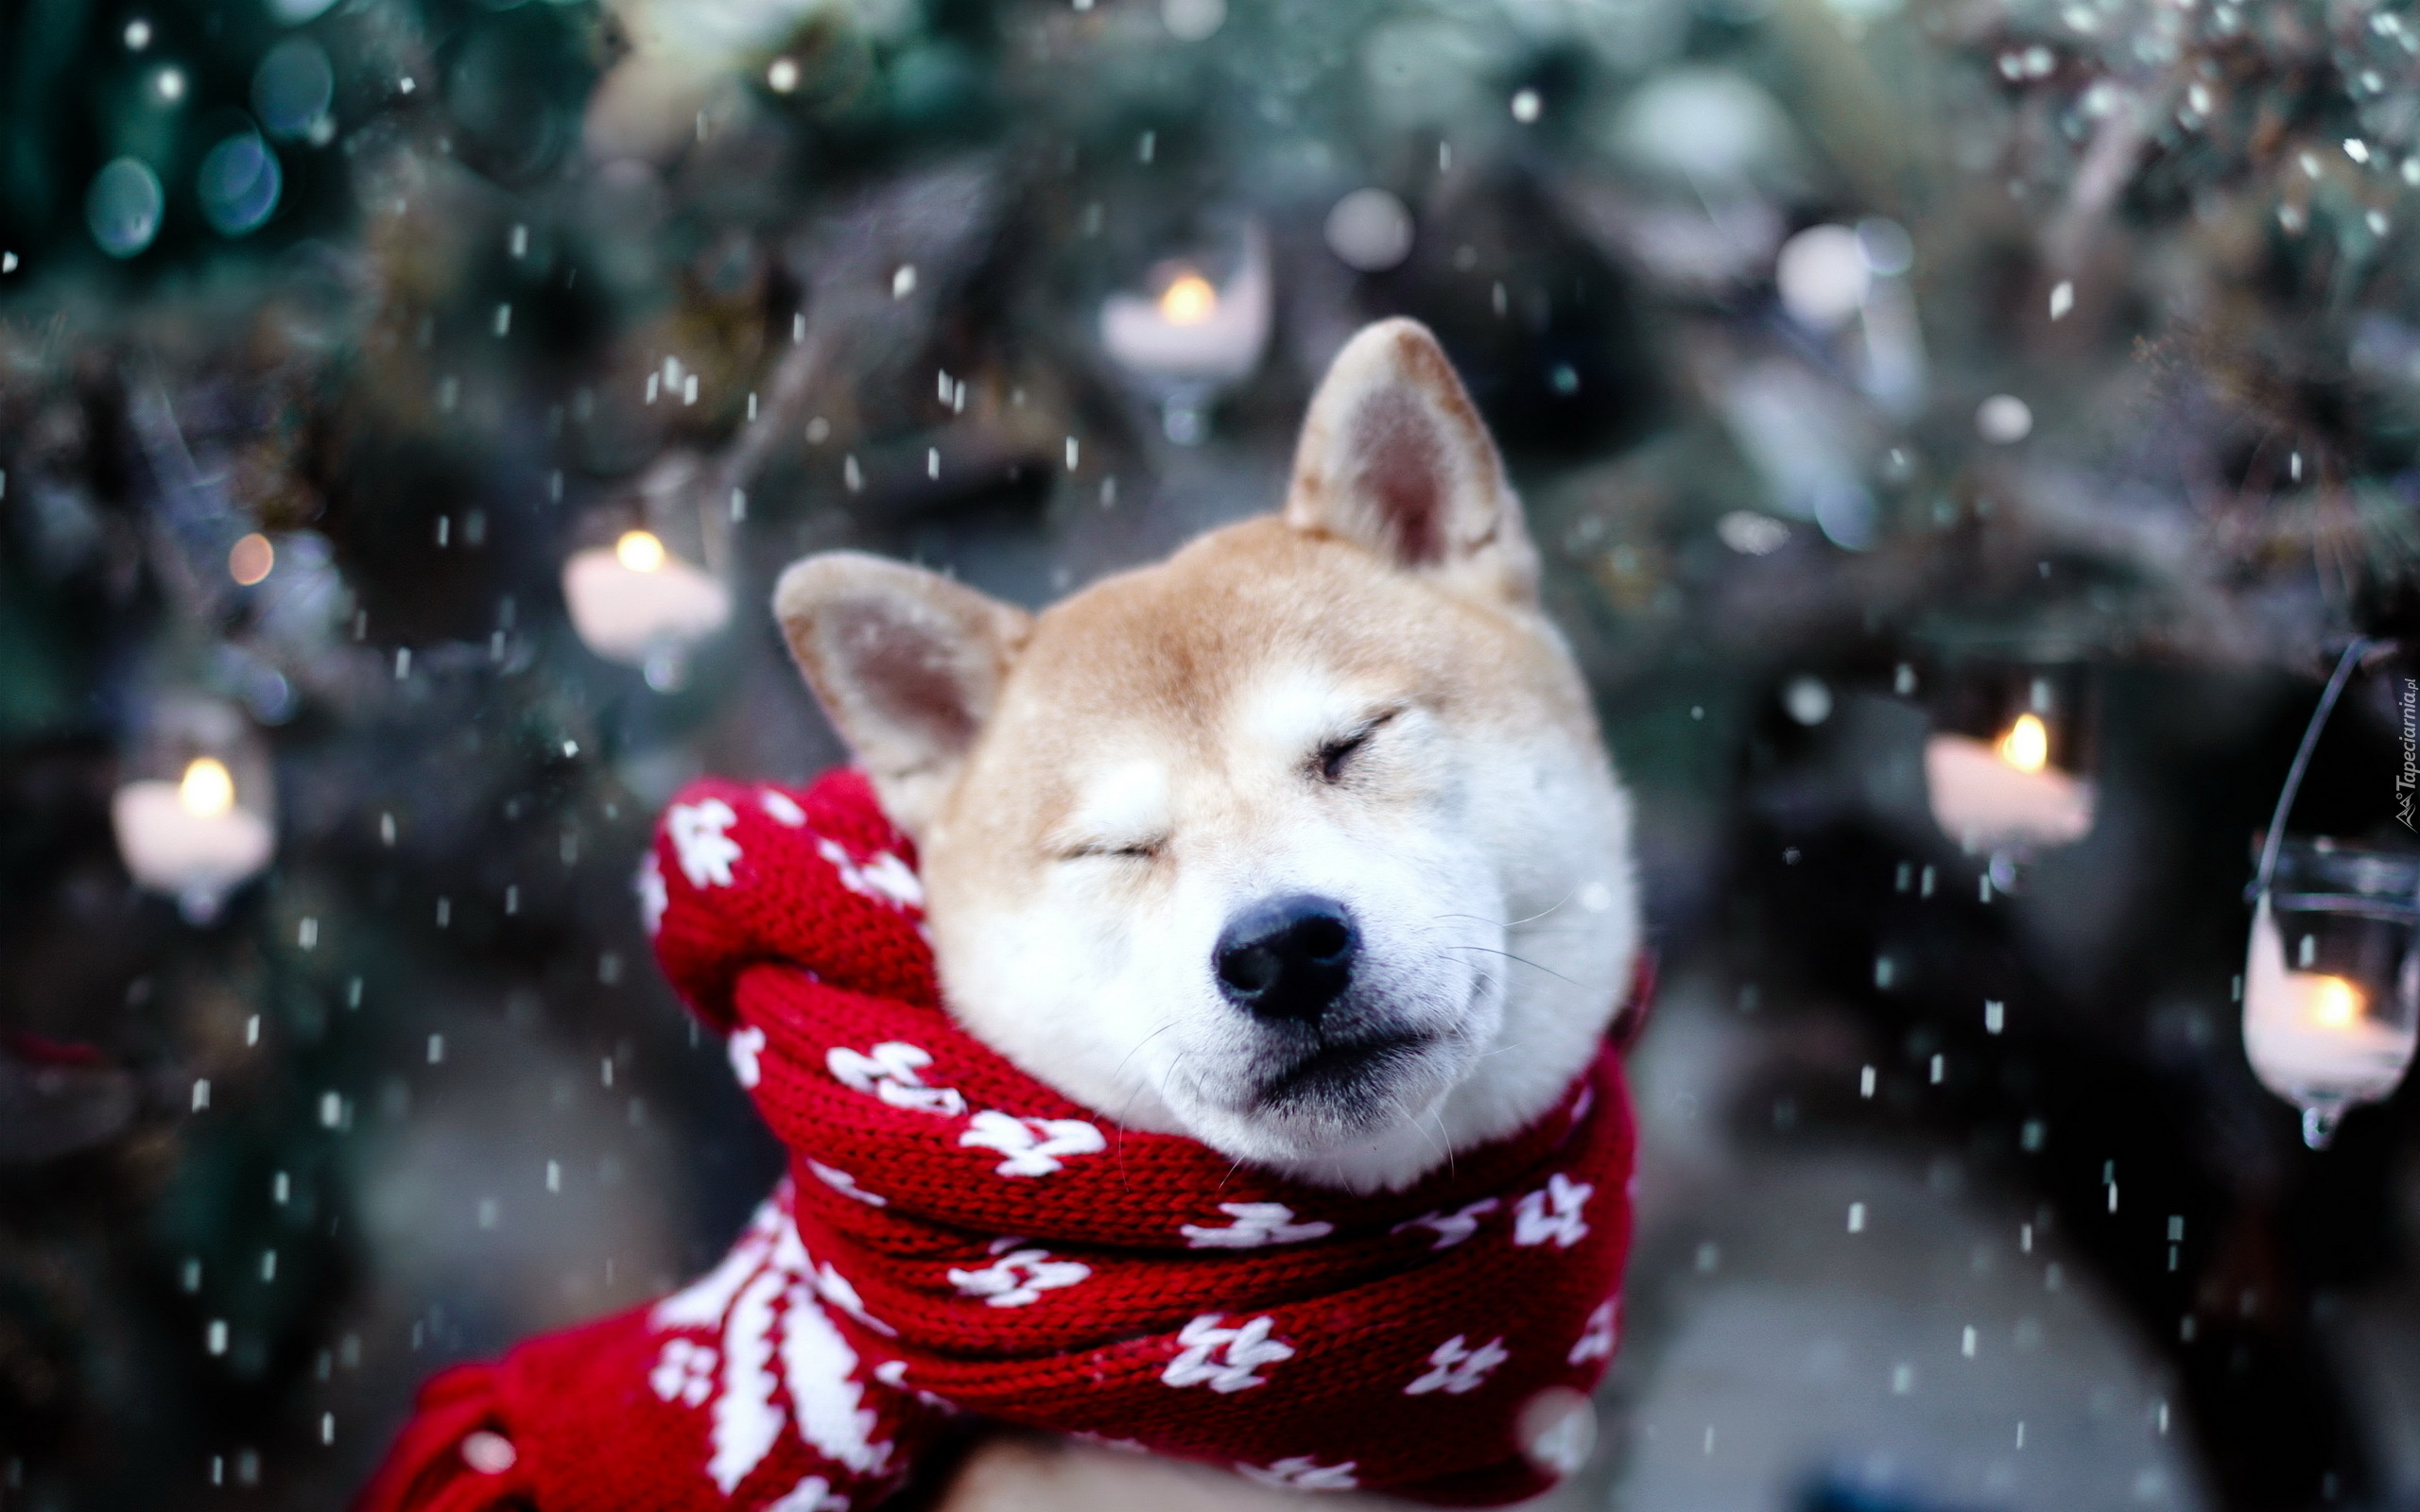 Pies, Akita Inu, Szalik, Śnieg